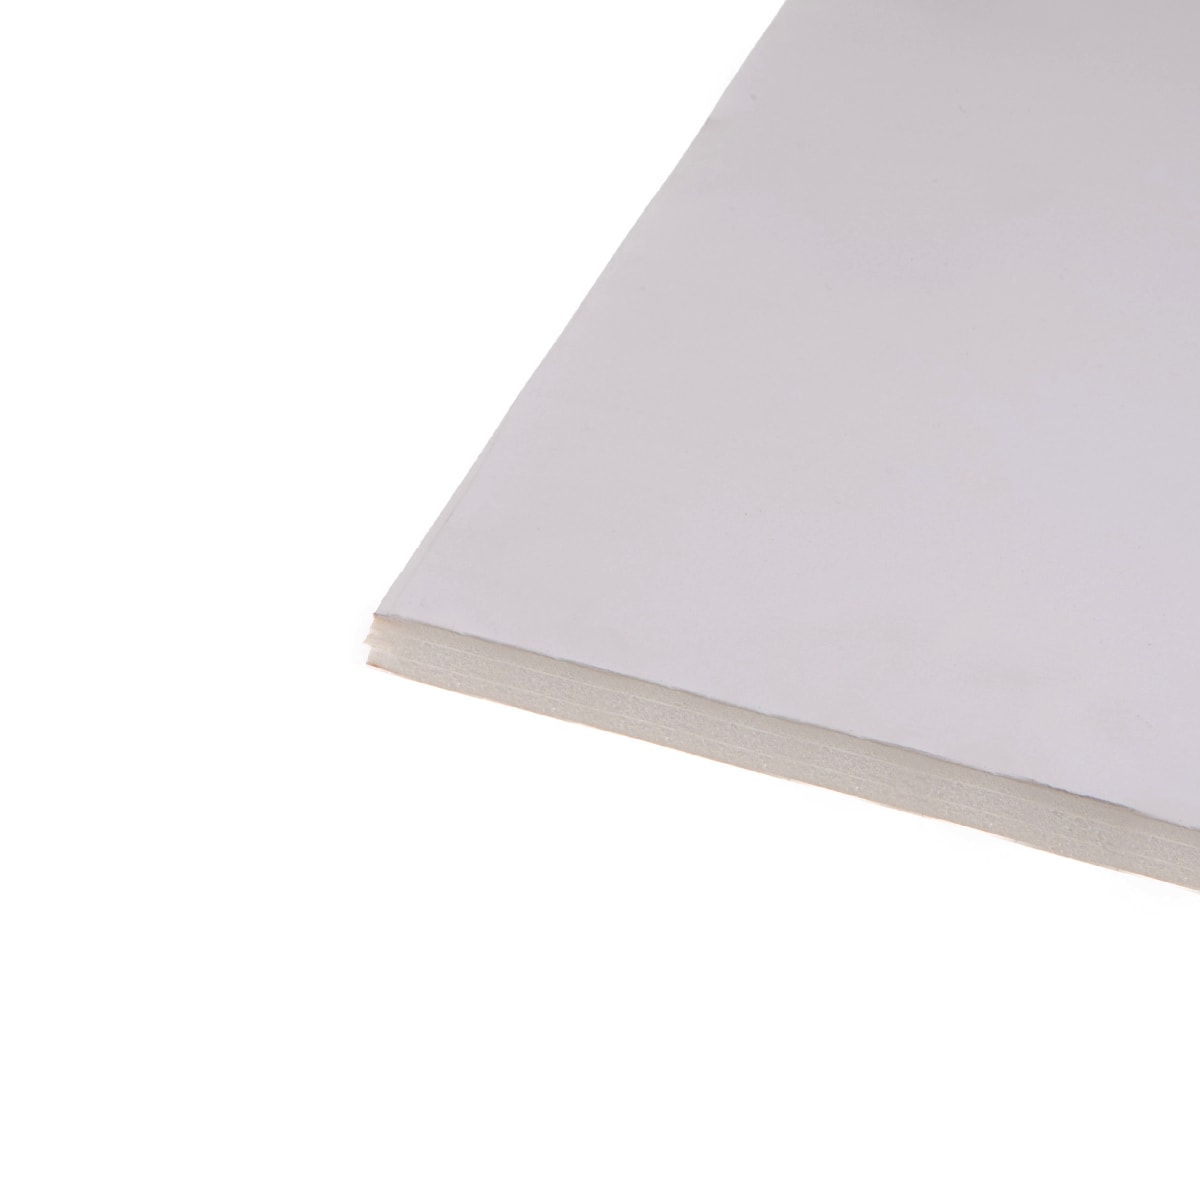  Foamcore / Cartón Pluma 120 x 240 cm, 4' x 8' white